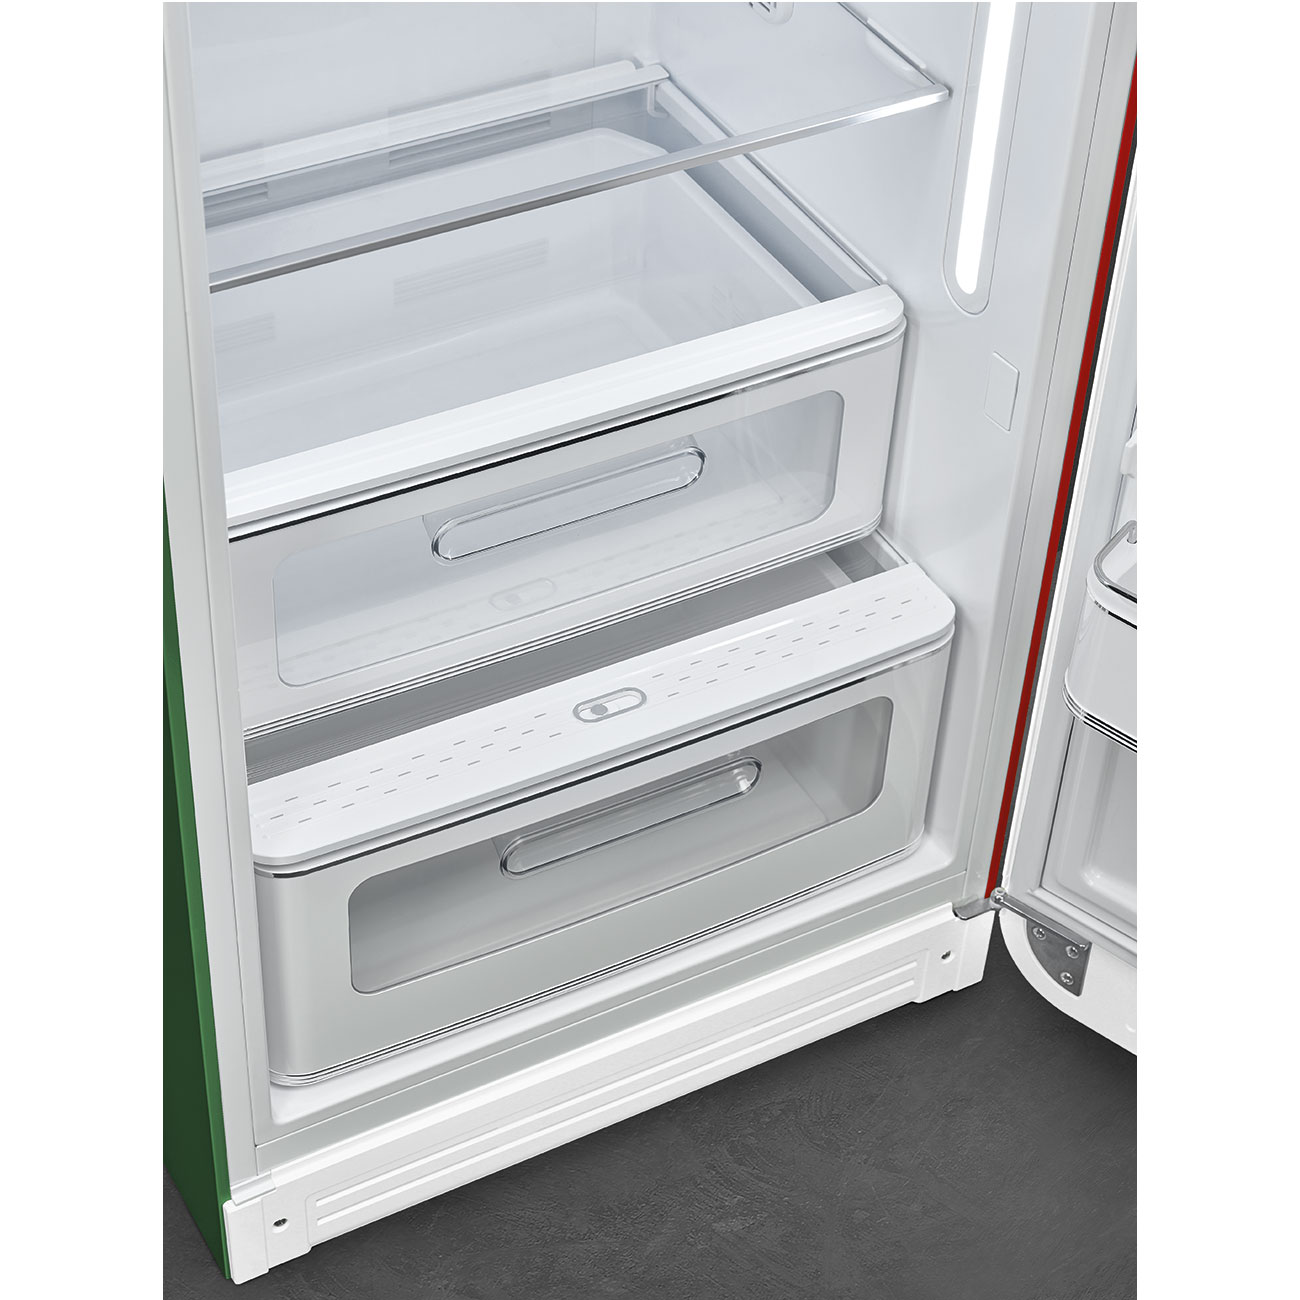 Decorated / Special refrigerator - Smeg_7